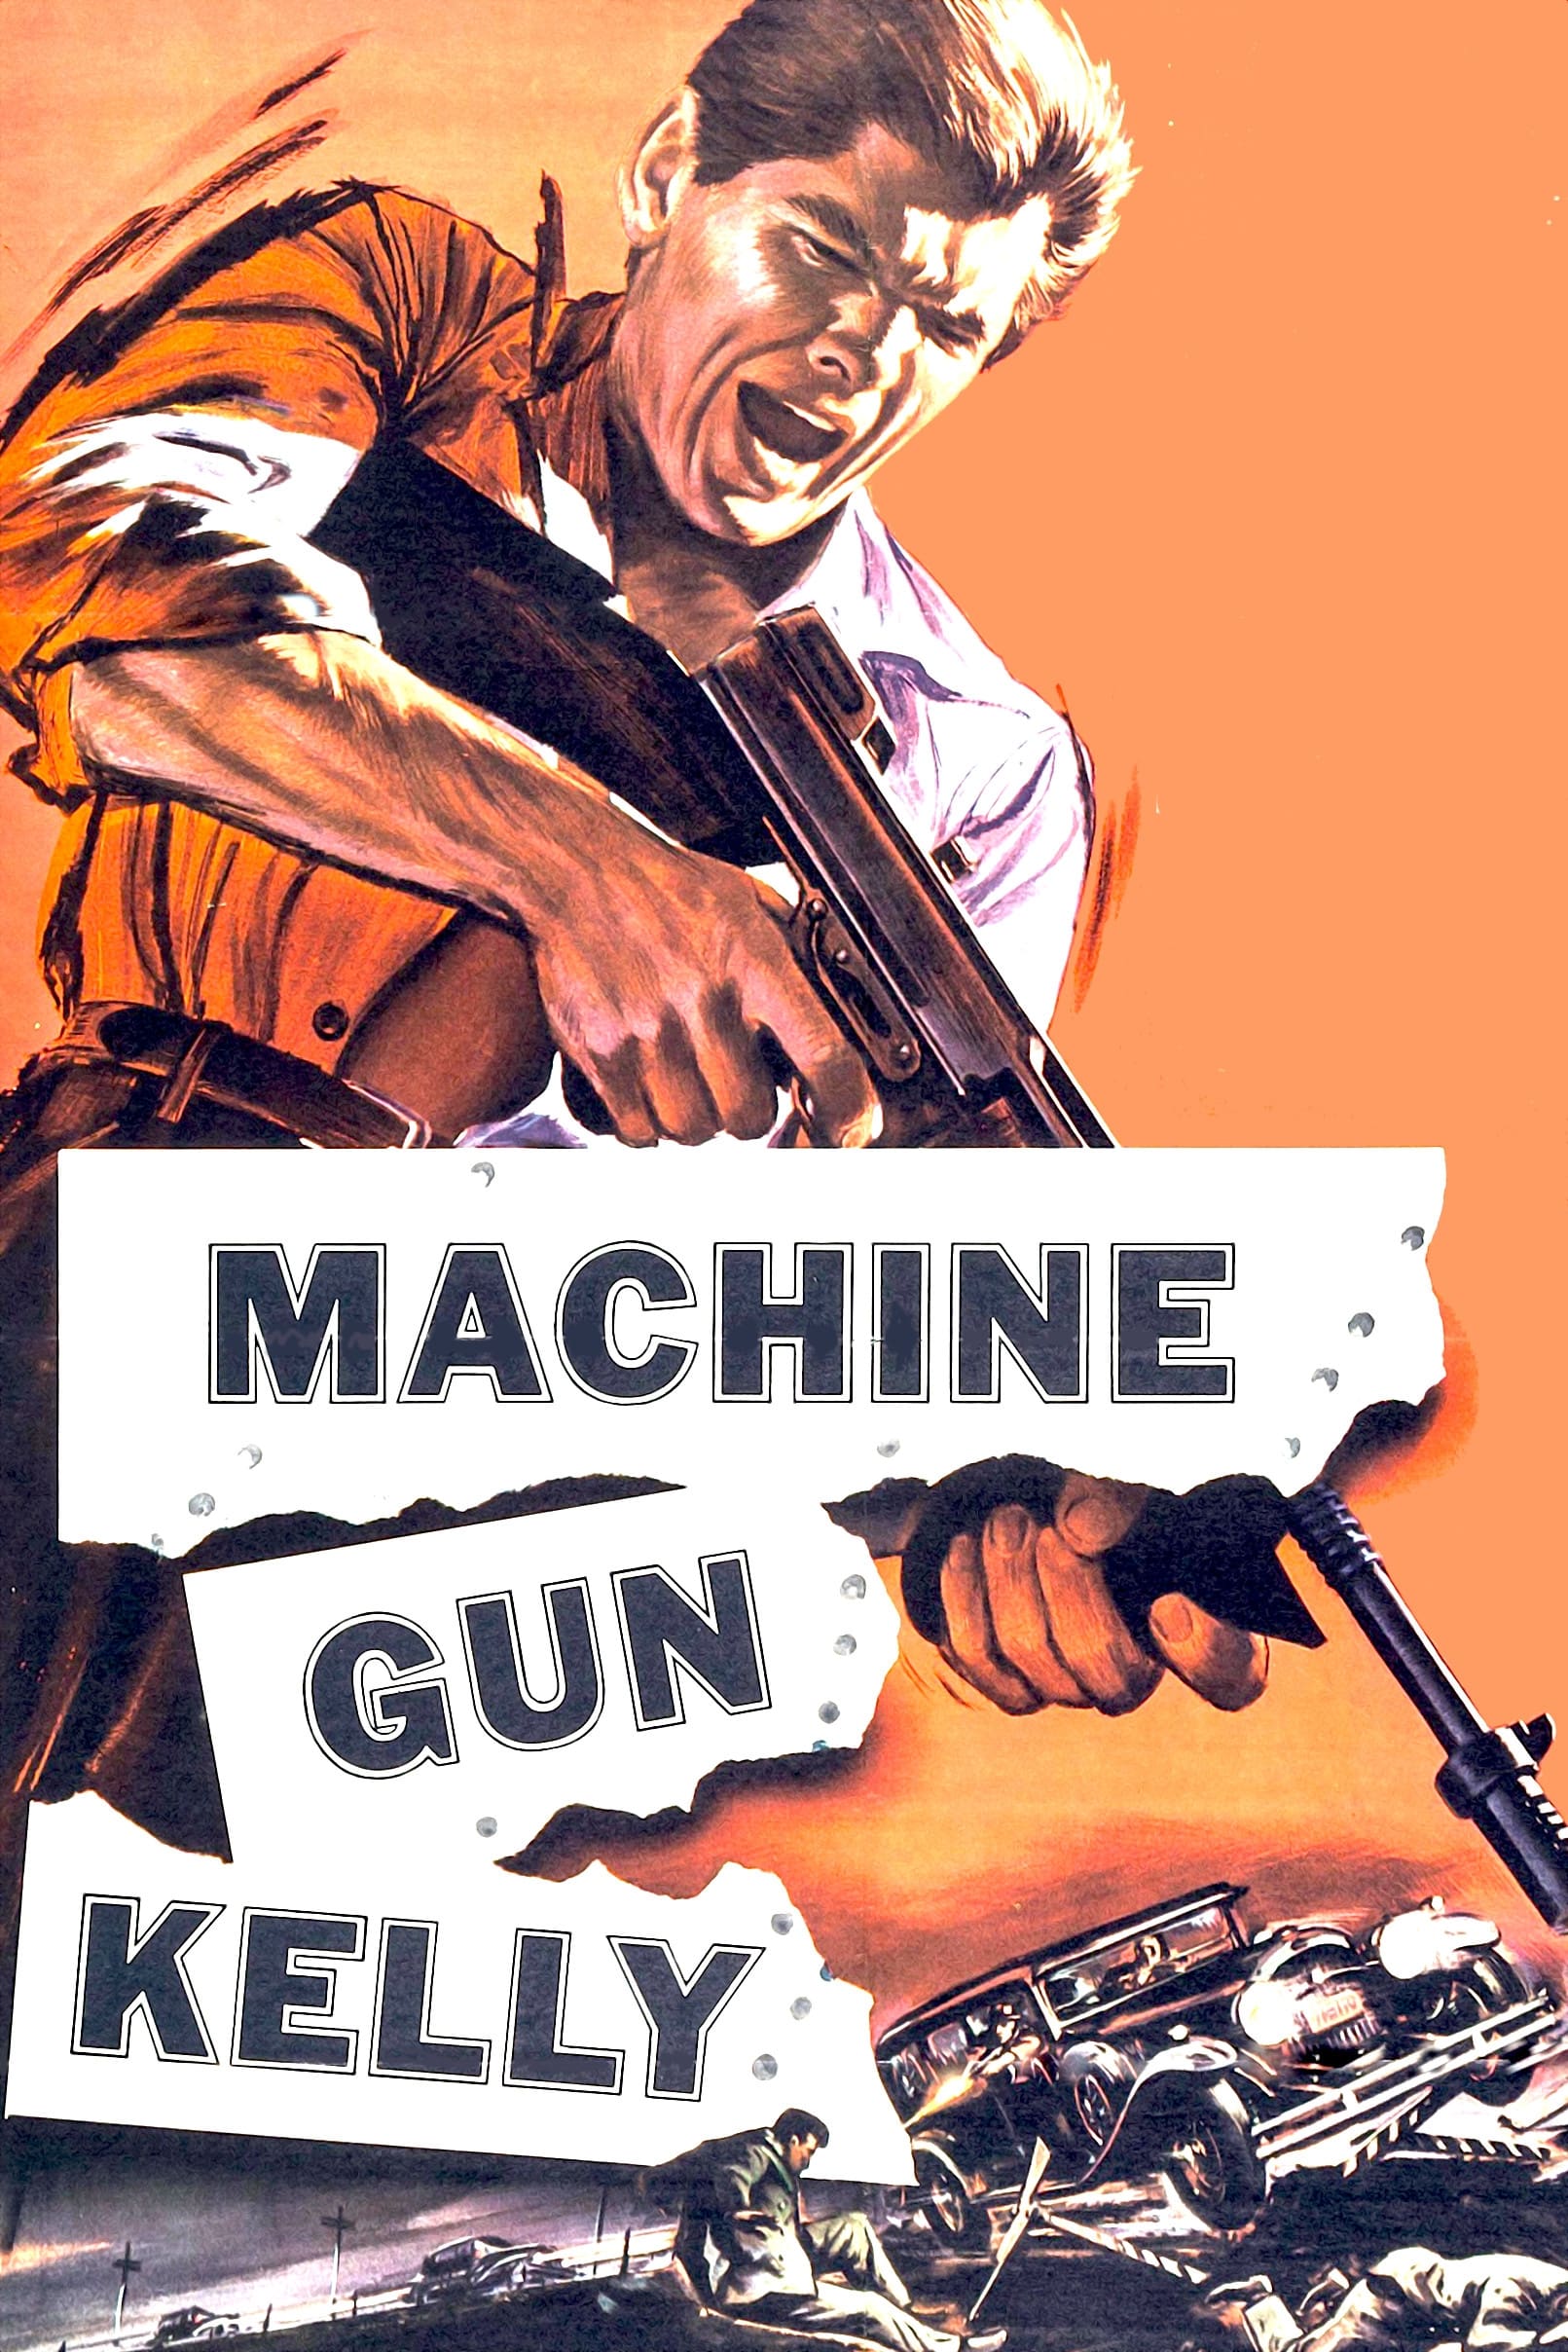 Machine-Gun Kelly (1958)